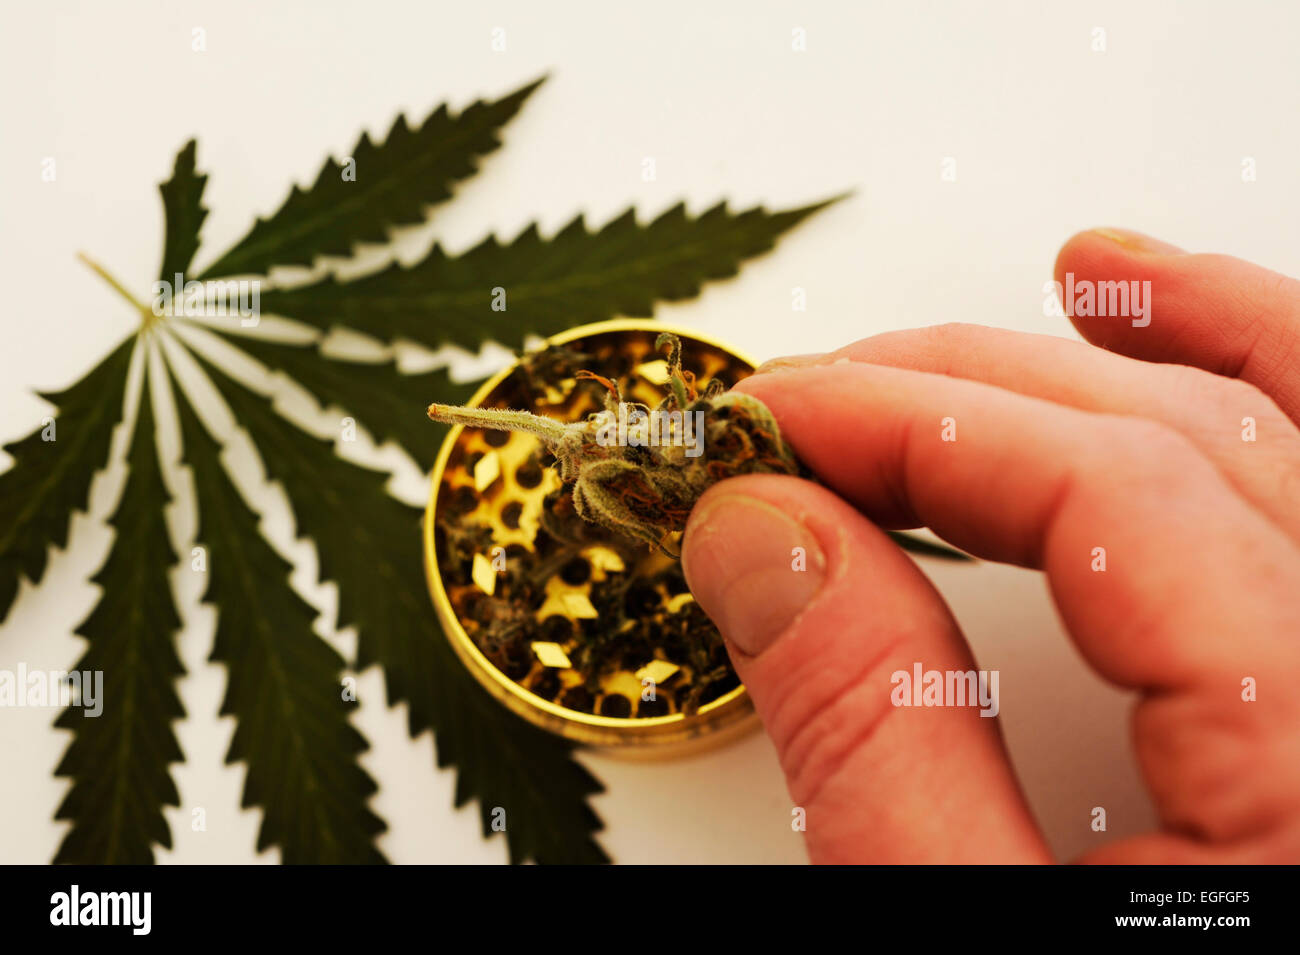 Medicinal Marijuana Stock Photo